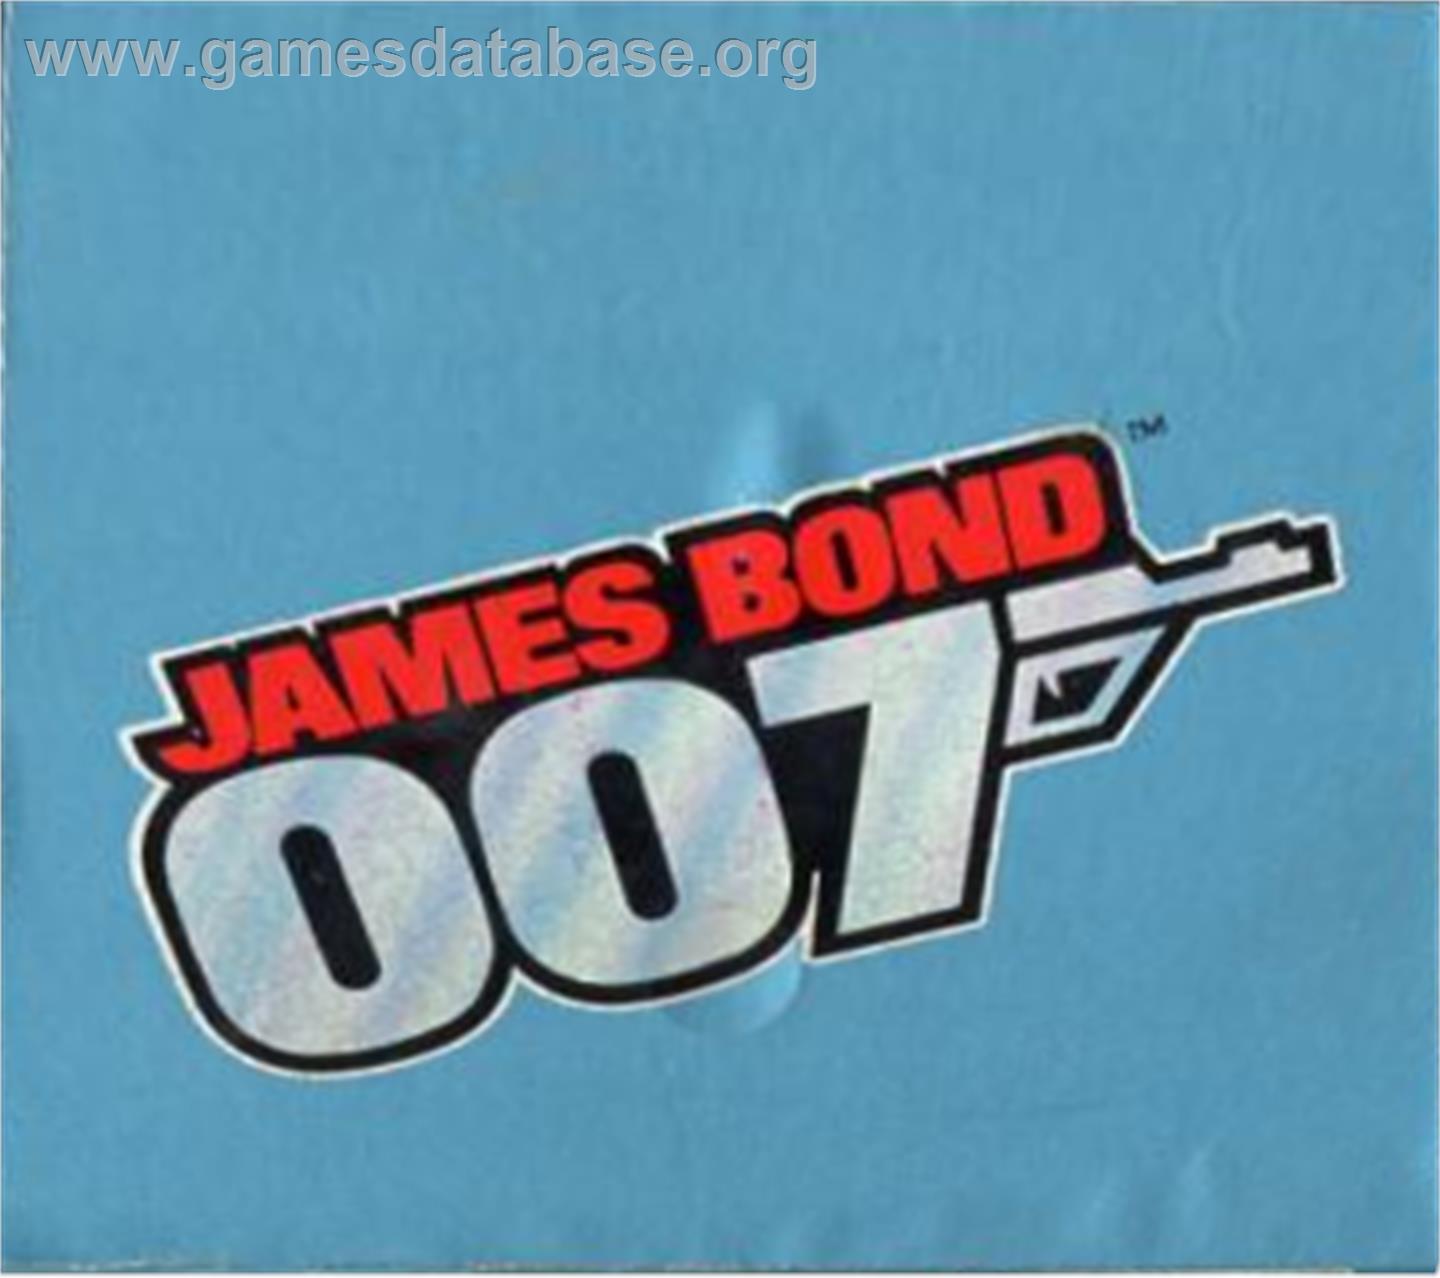 James Bond 007 - Atari 5200 - Artwork - Cartridge Top